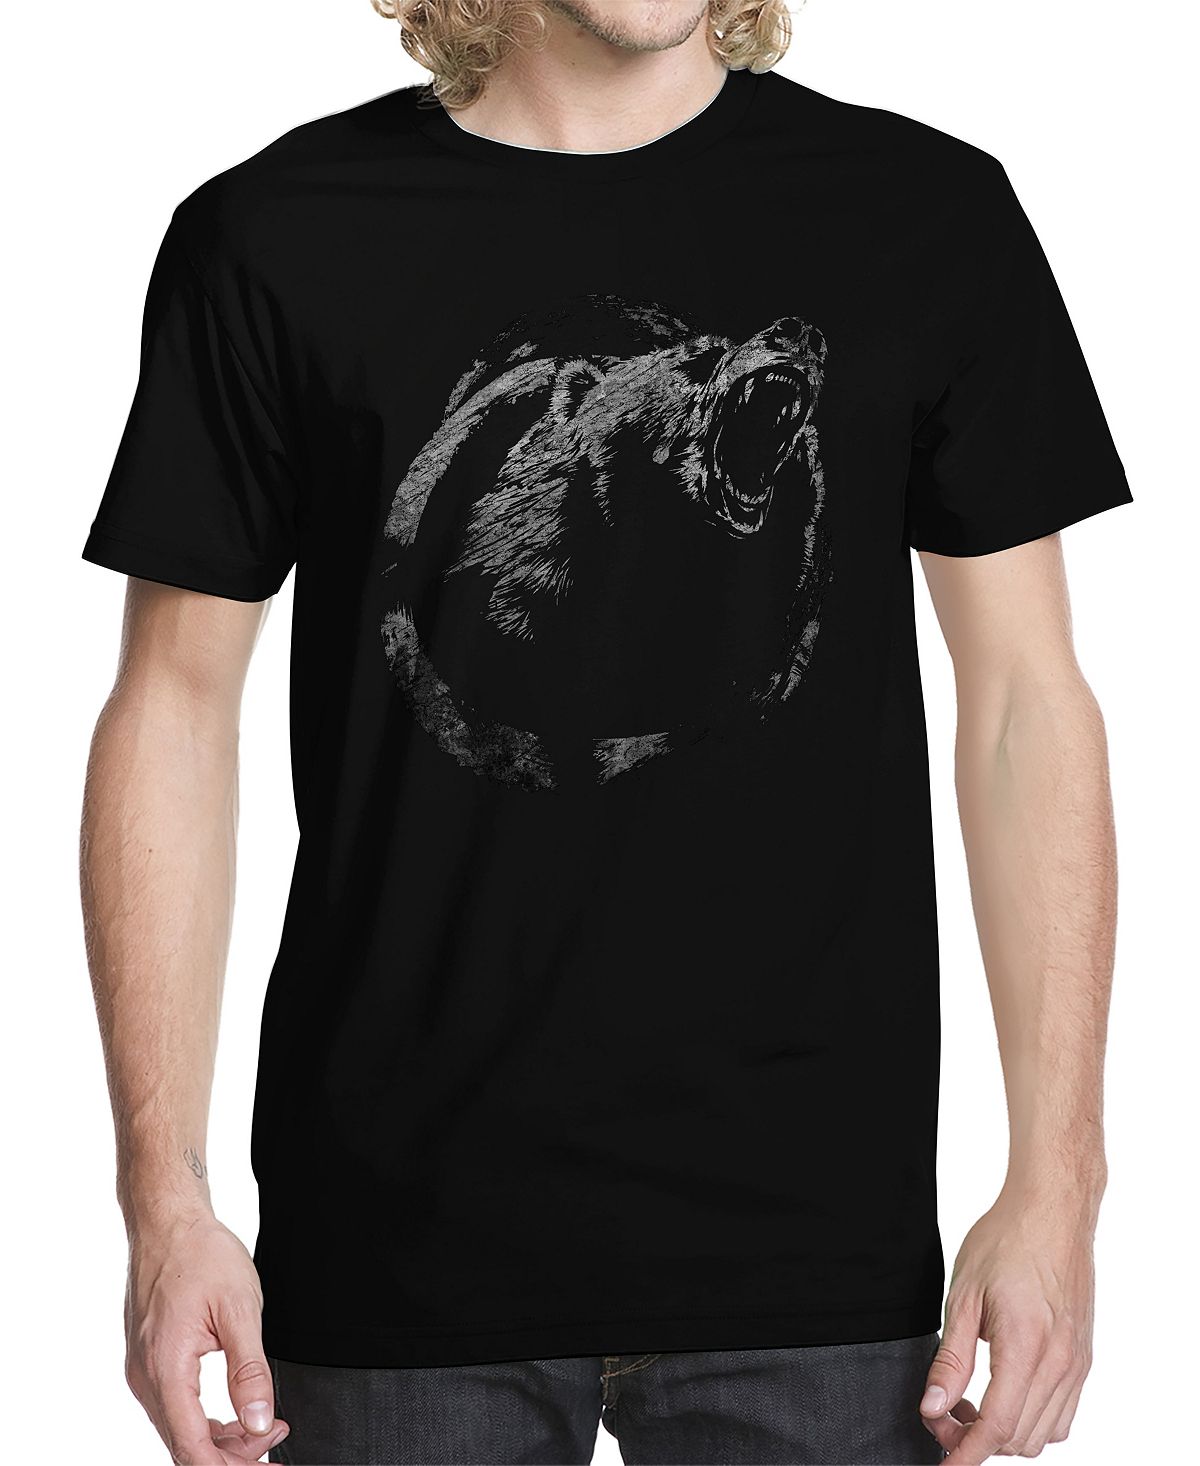 Мужская футболка с рисунком медведя Buzz Shirts, черный